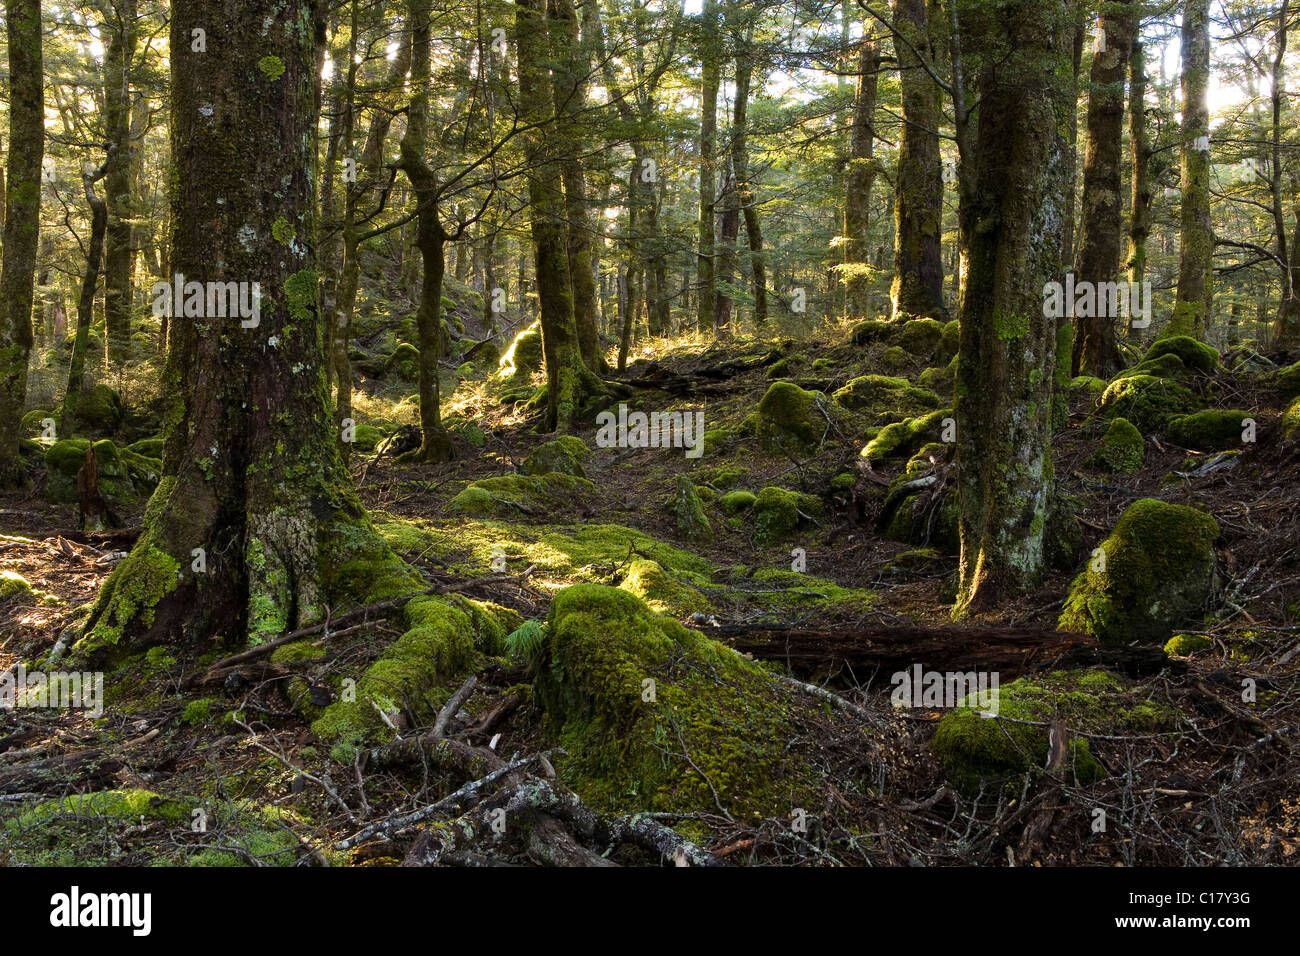 Rayons dans une forêt mystique, Routeburn Road, Otago, île du Sud, Nouvelle-Zélande Banque D'Images